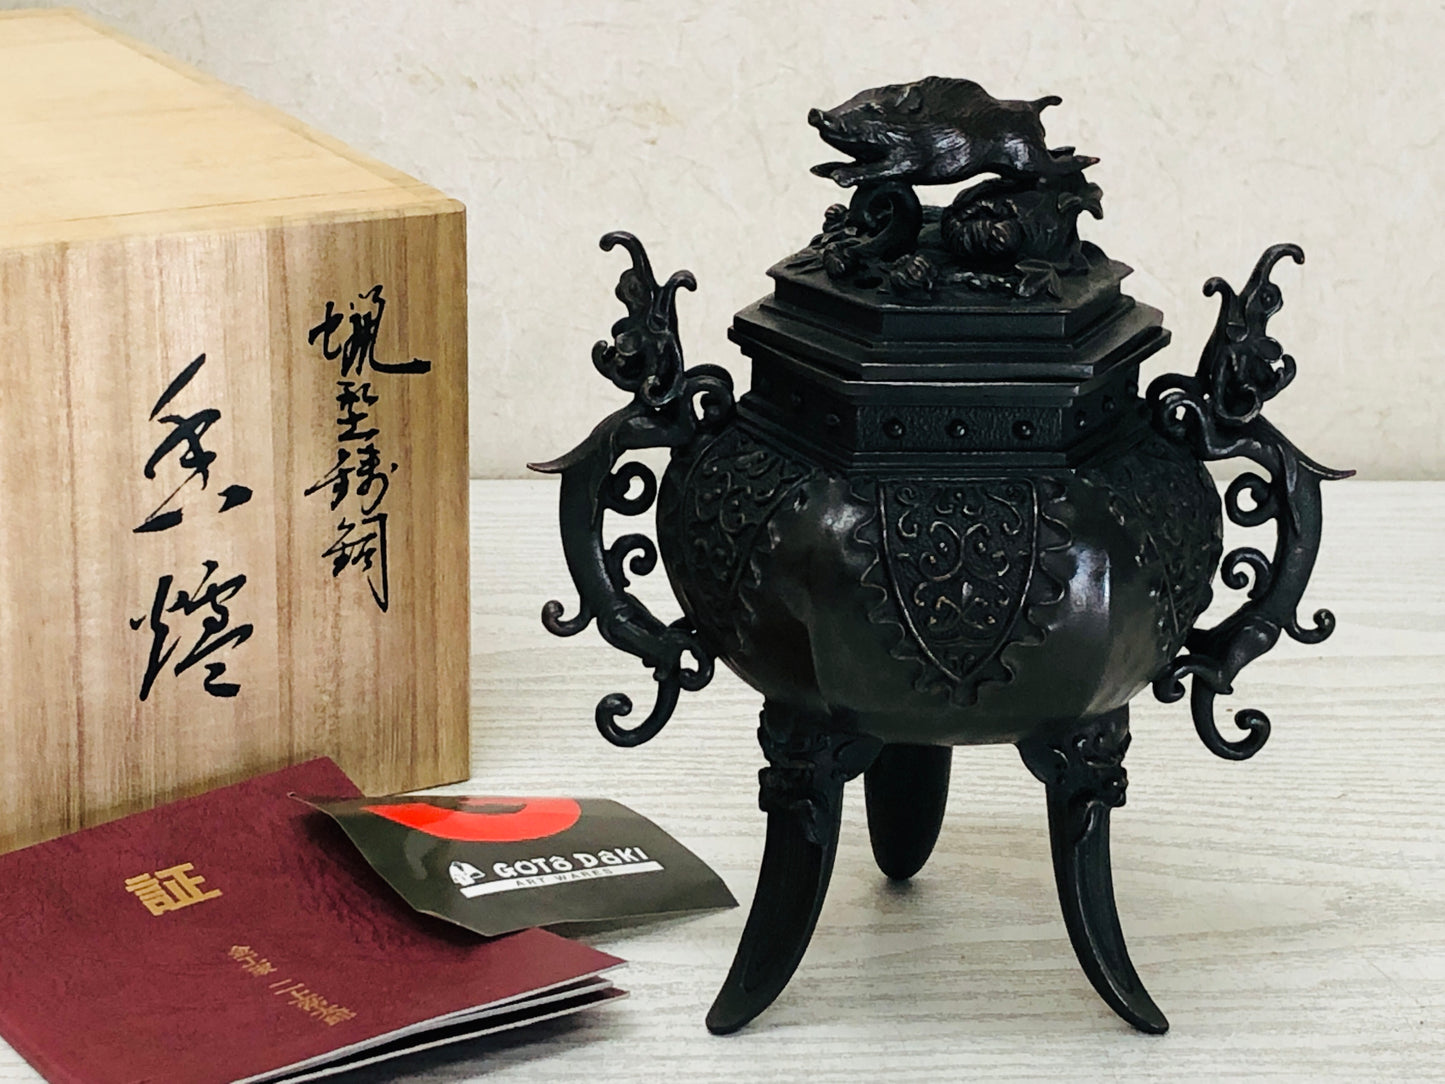 Y3353 KOURO Copper signed box Japan antique fragrance aroma incense burner